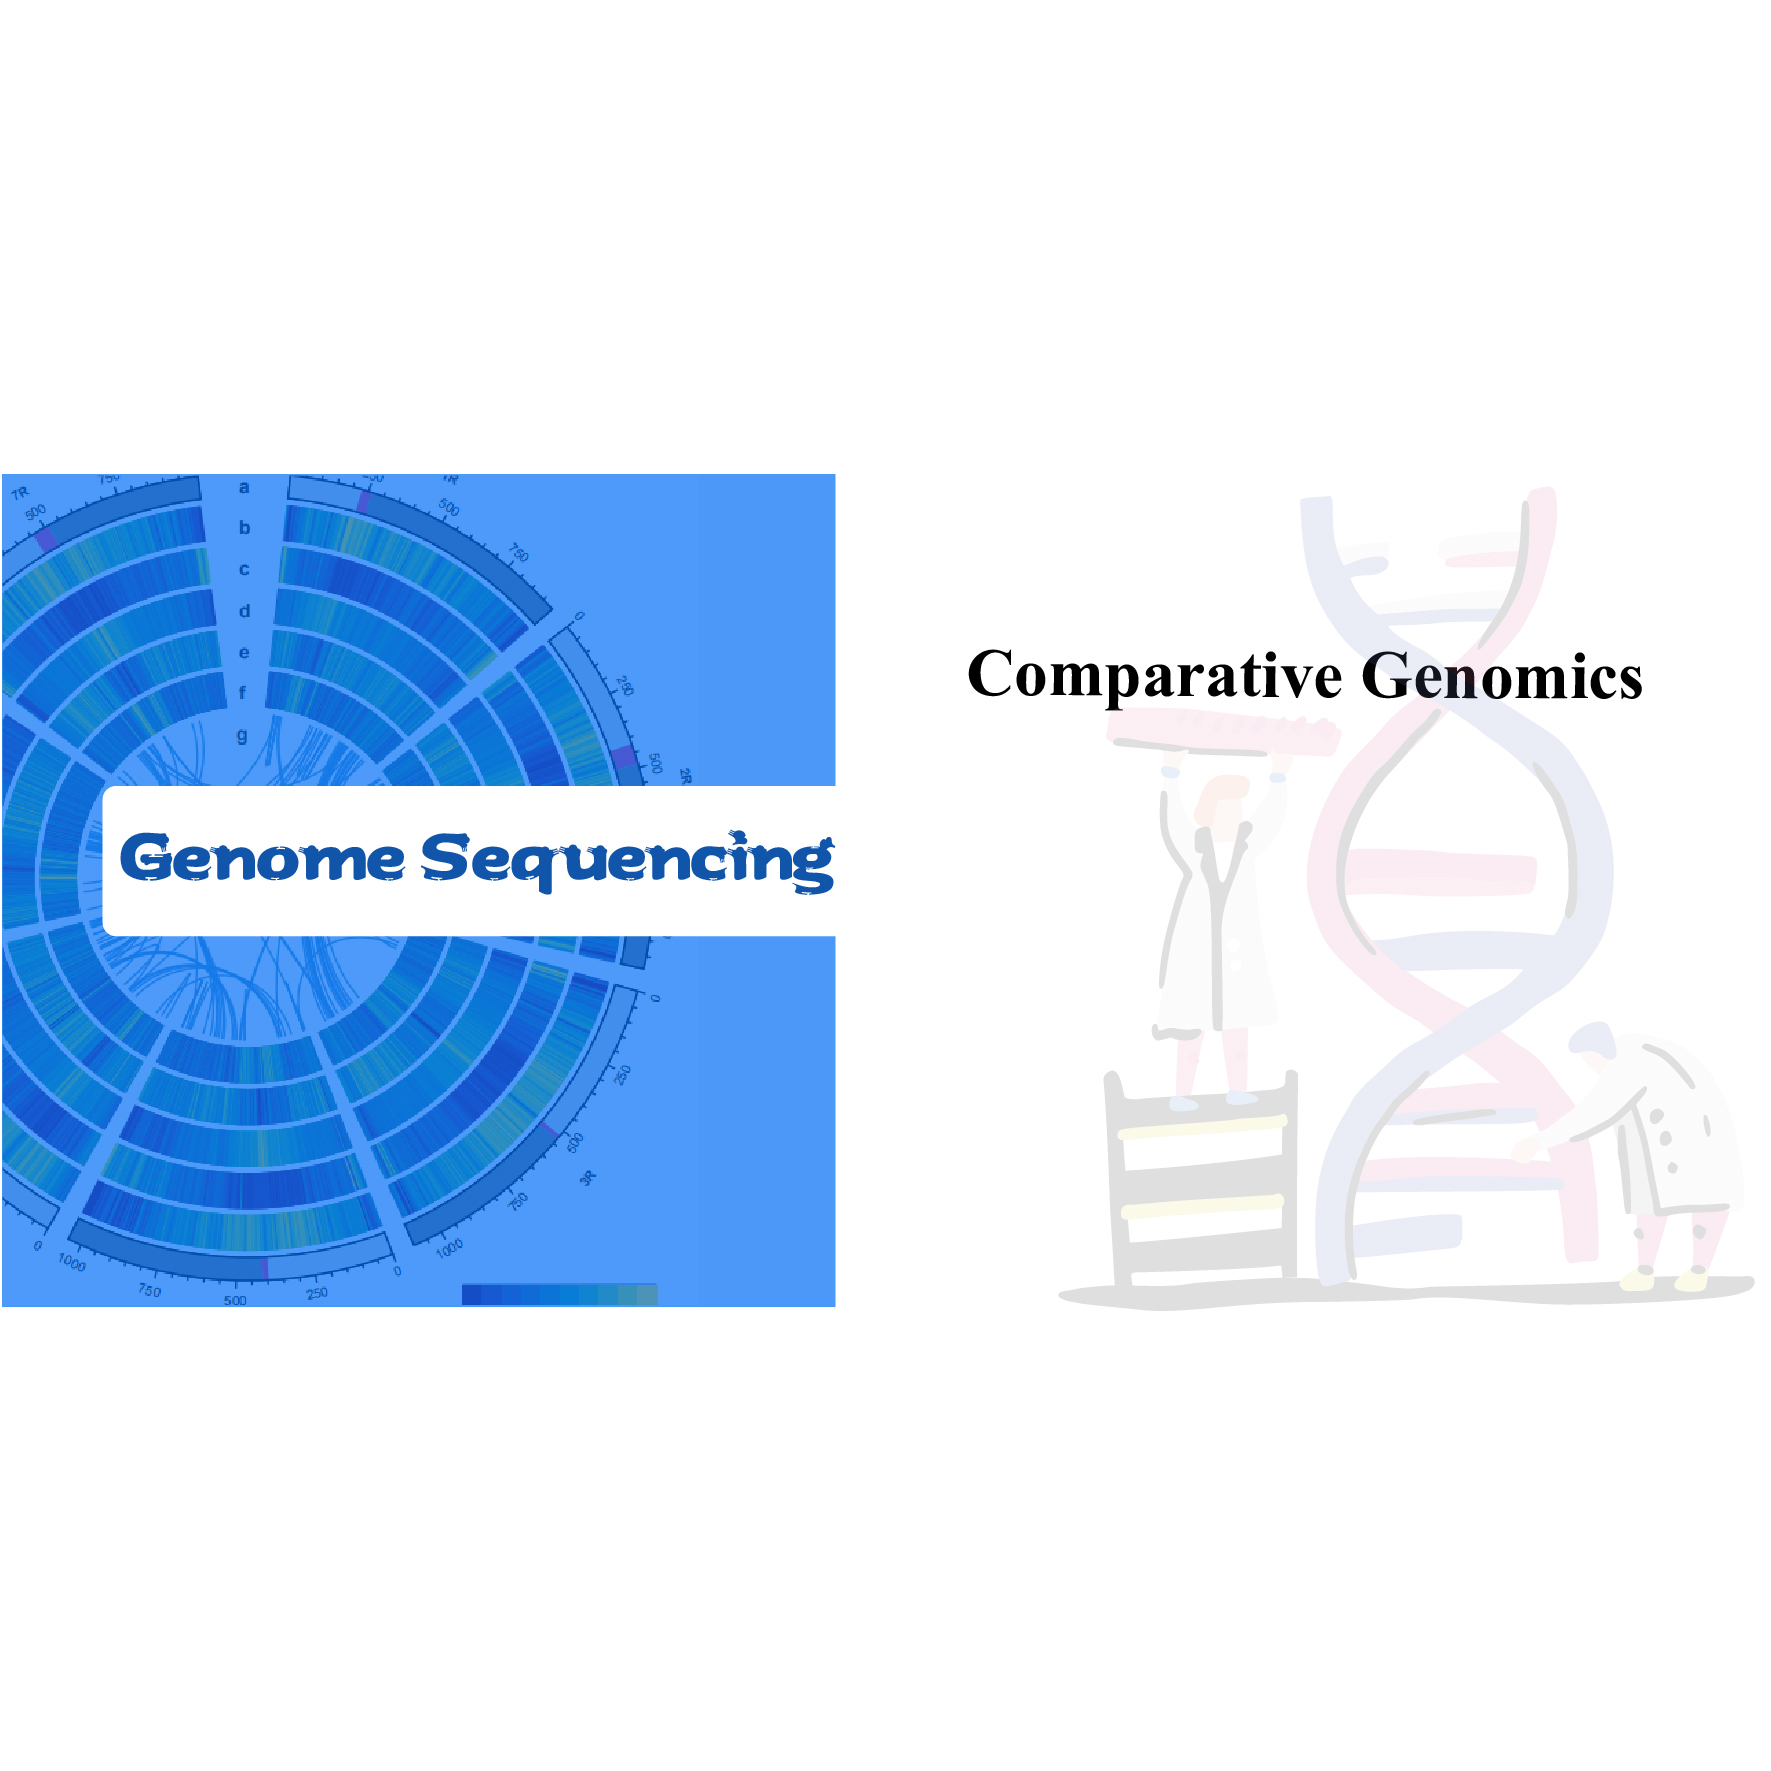 Сравнительная геномика